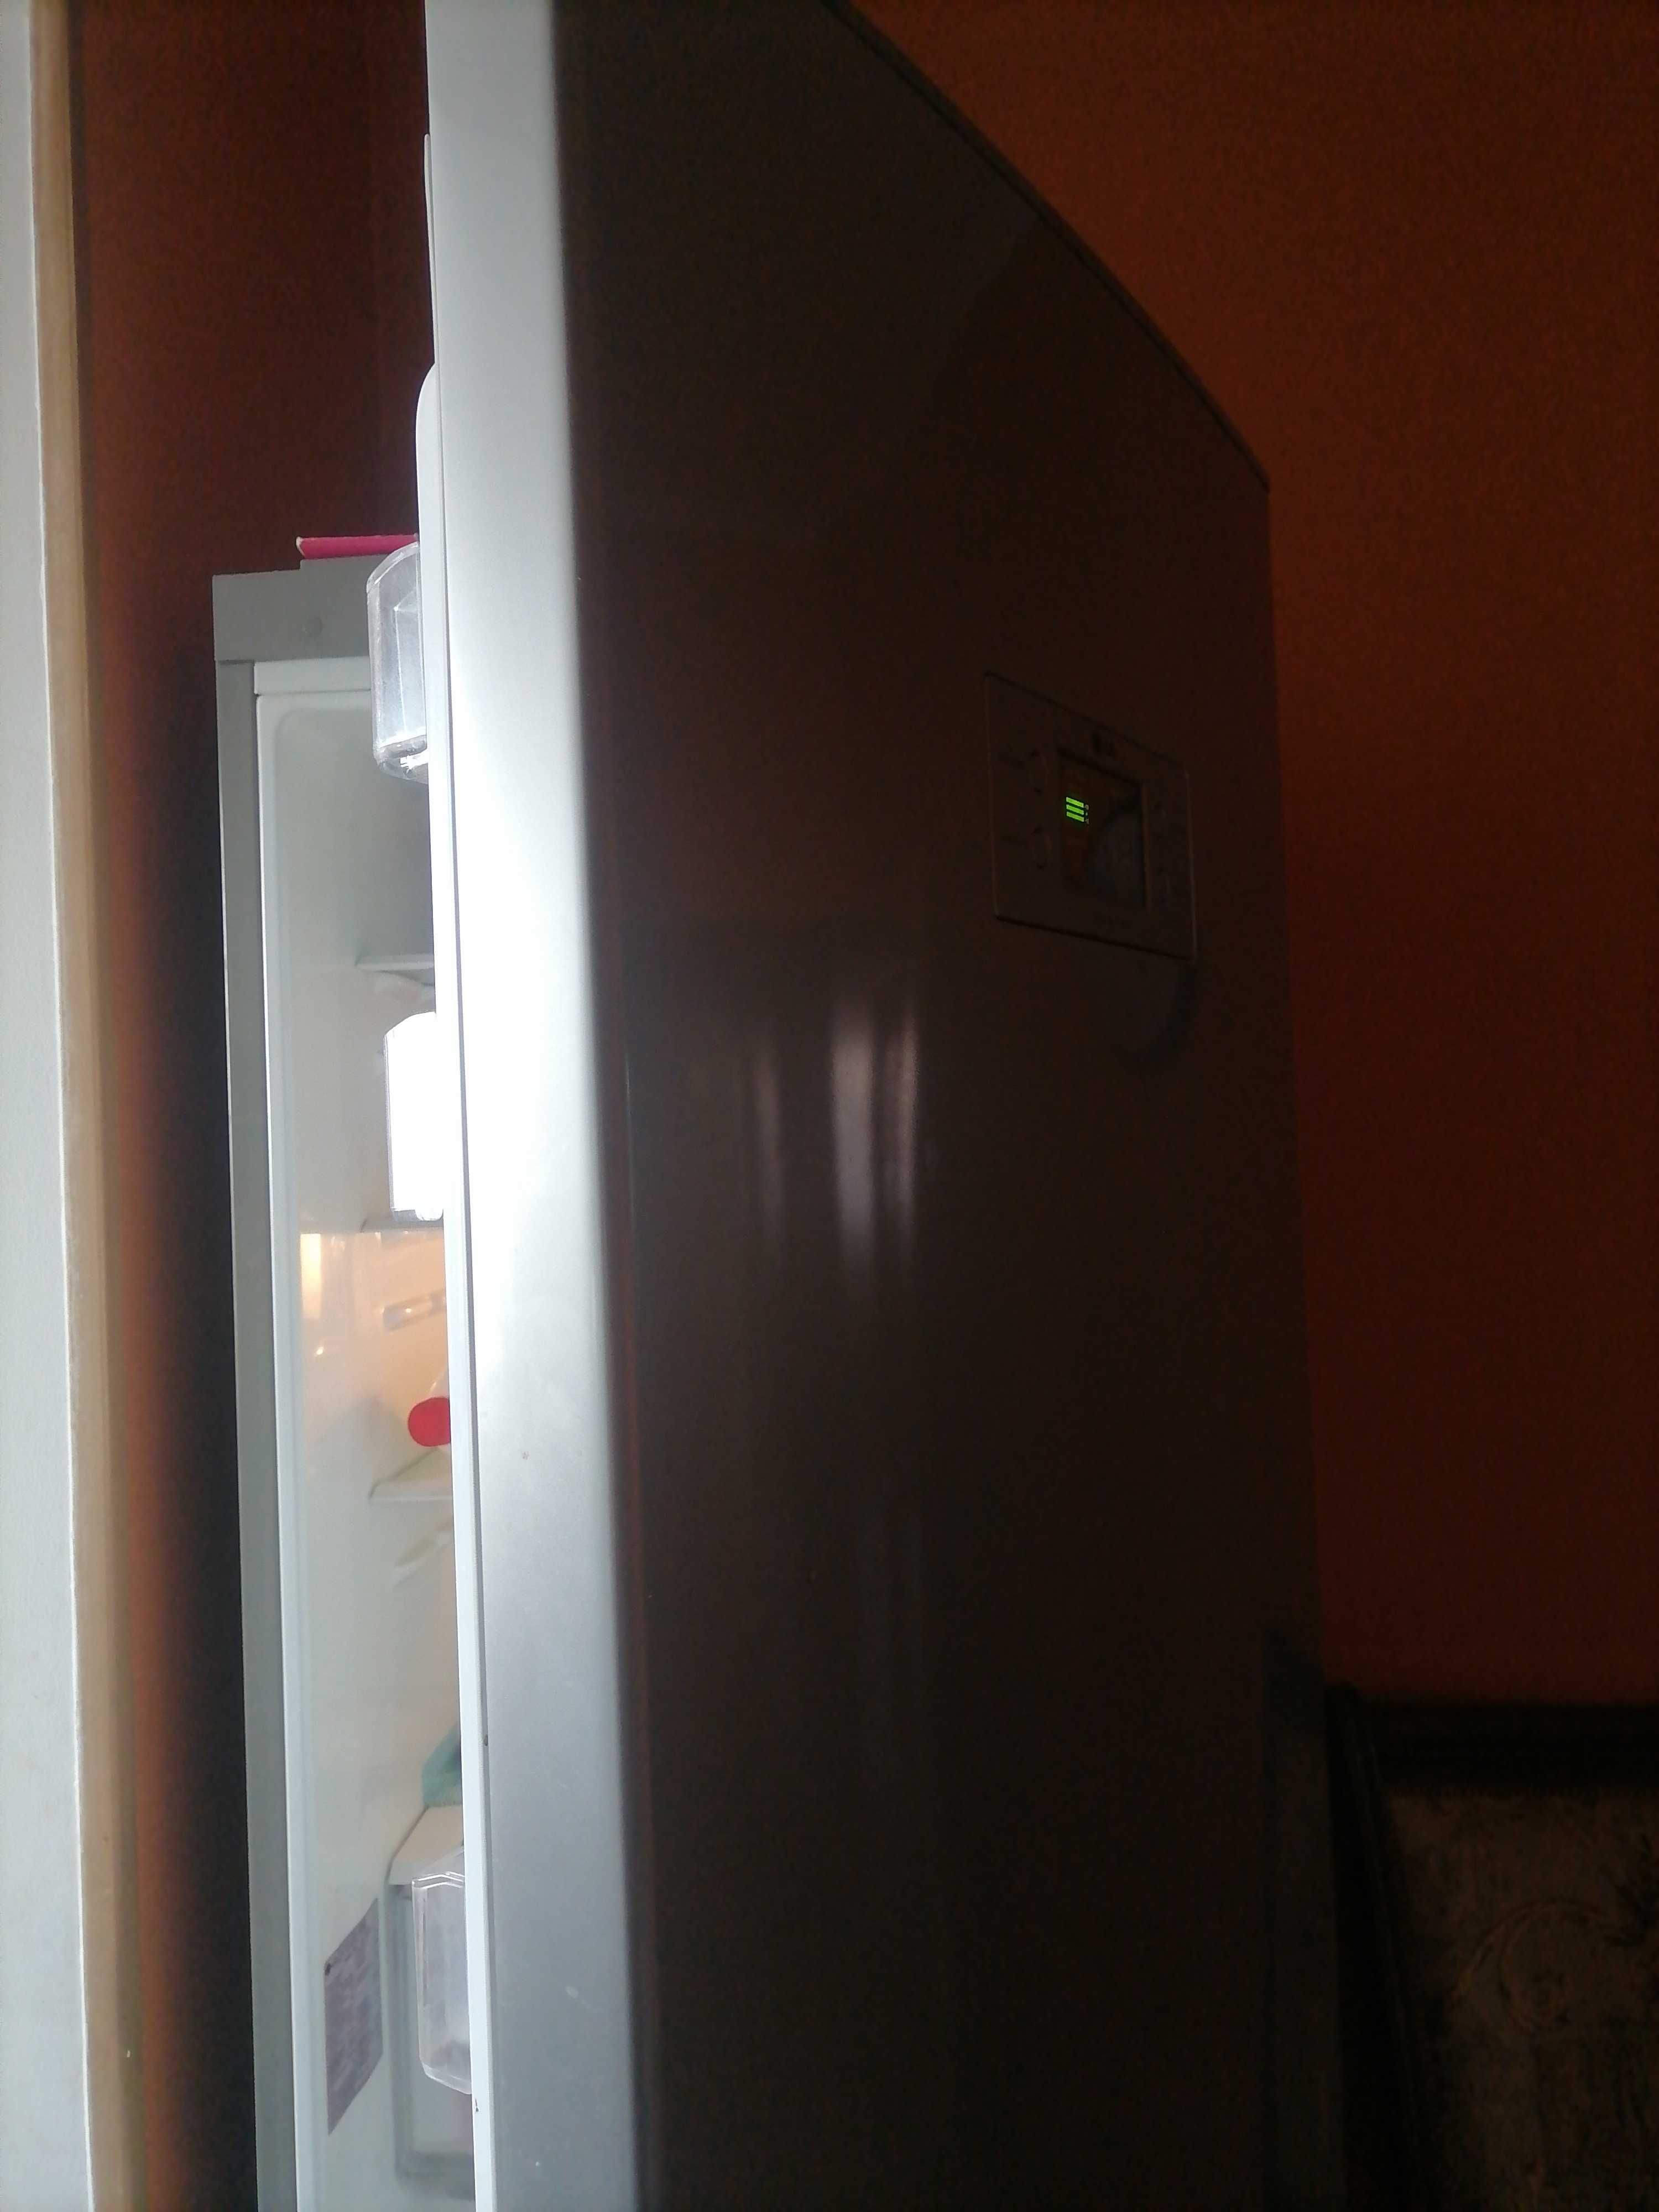 Кондиционер, холодильник ремонт заправка установка